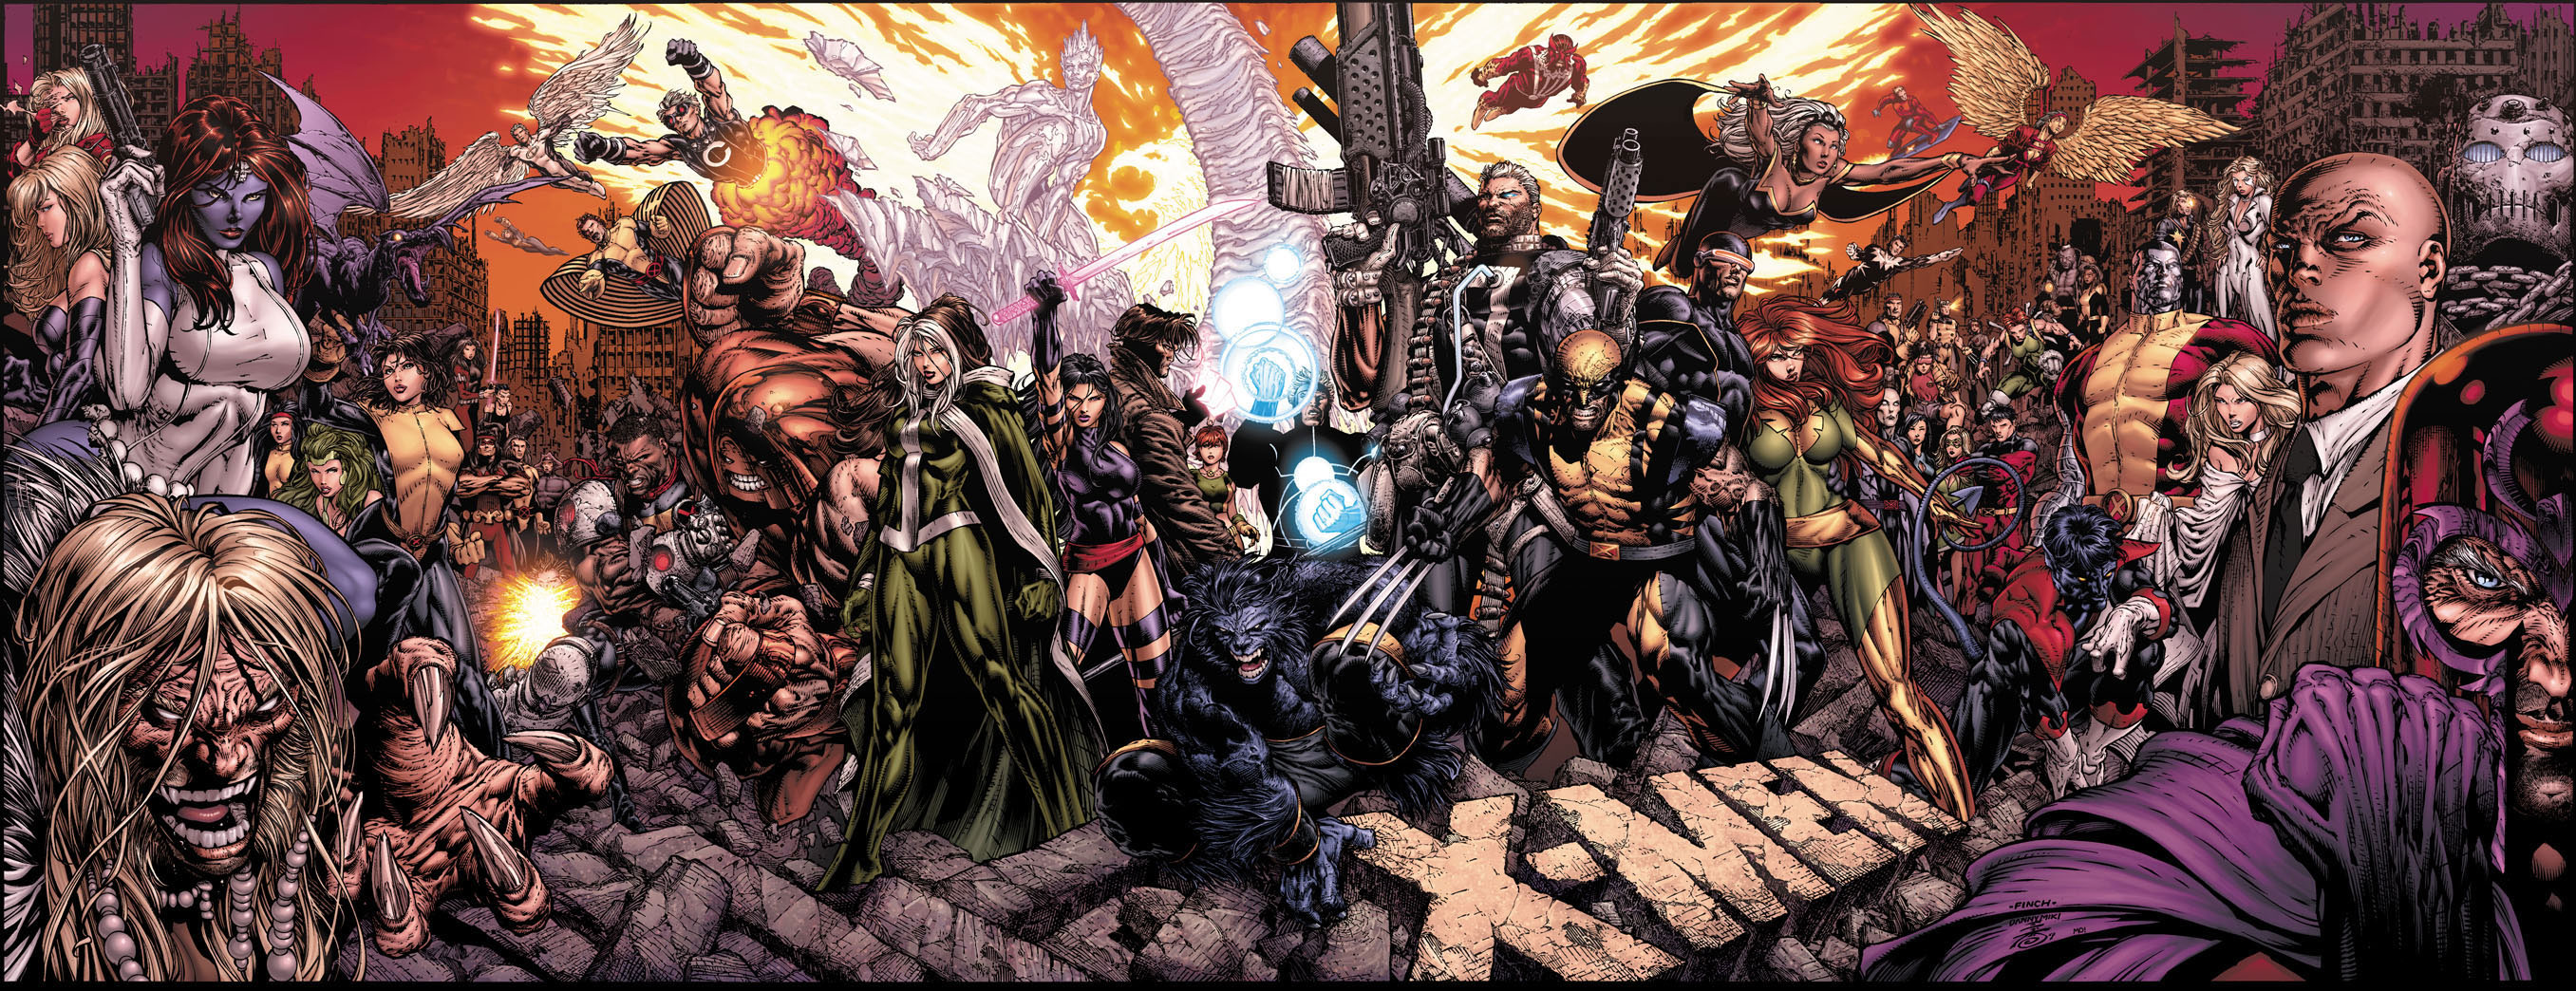 X-Men Vol 2 #200: Endangered Species